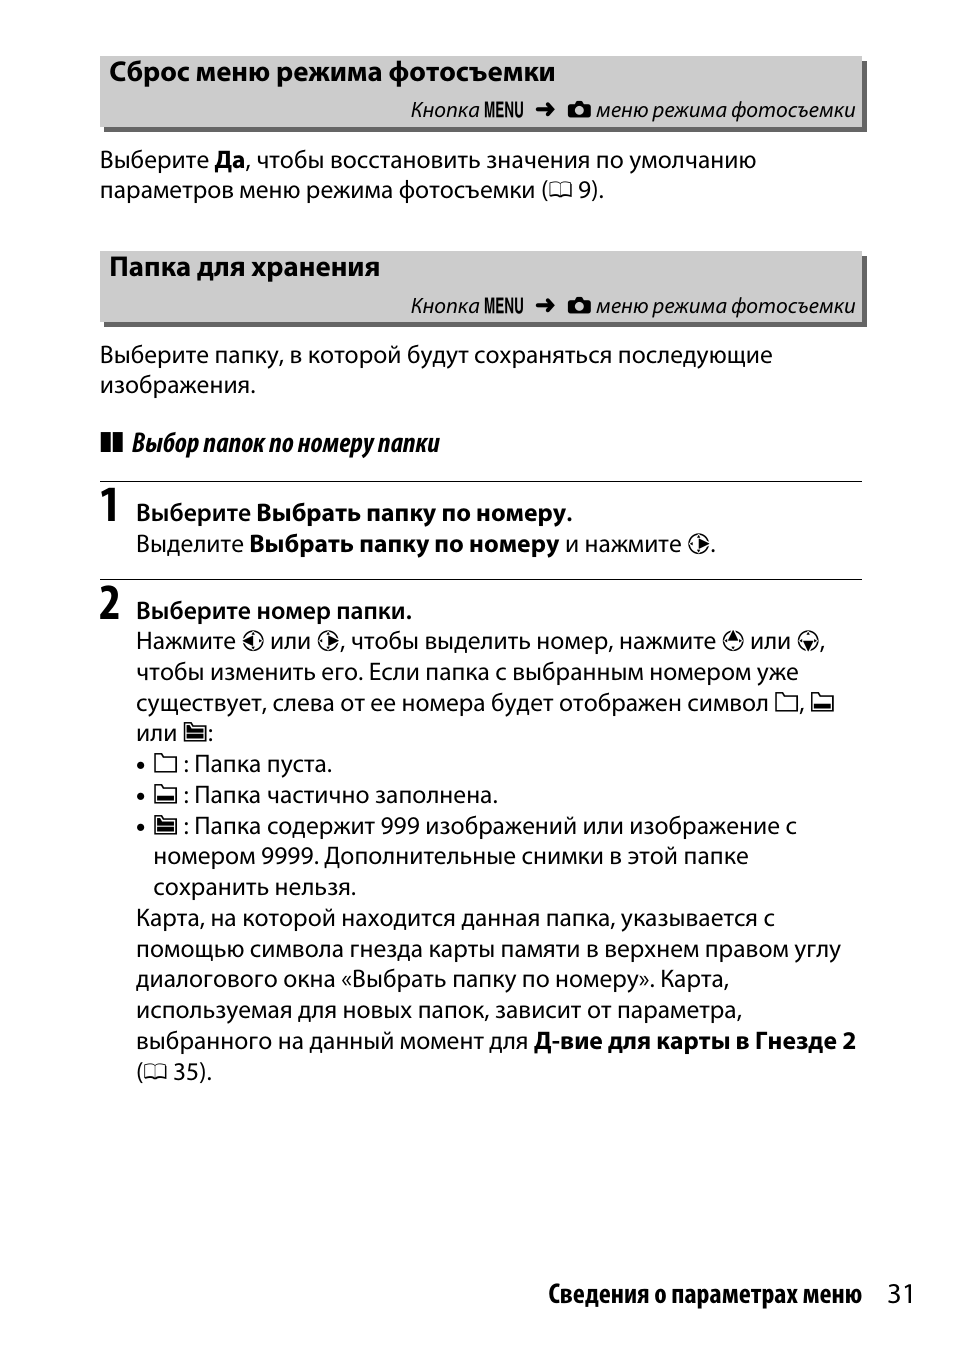 Сброс меню режима фотосъемки, Папка для хранения | Инструкция по эксплуатации Nikon D7200 body | Страница 31 / 202